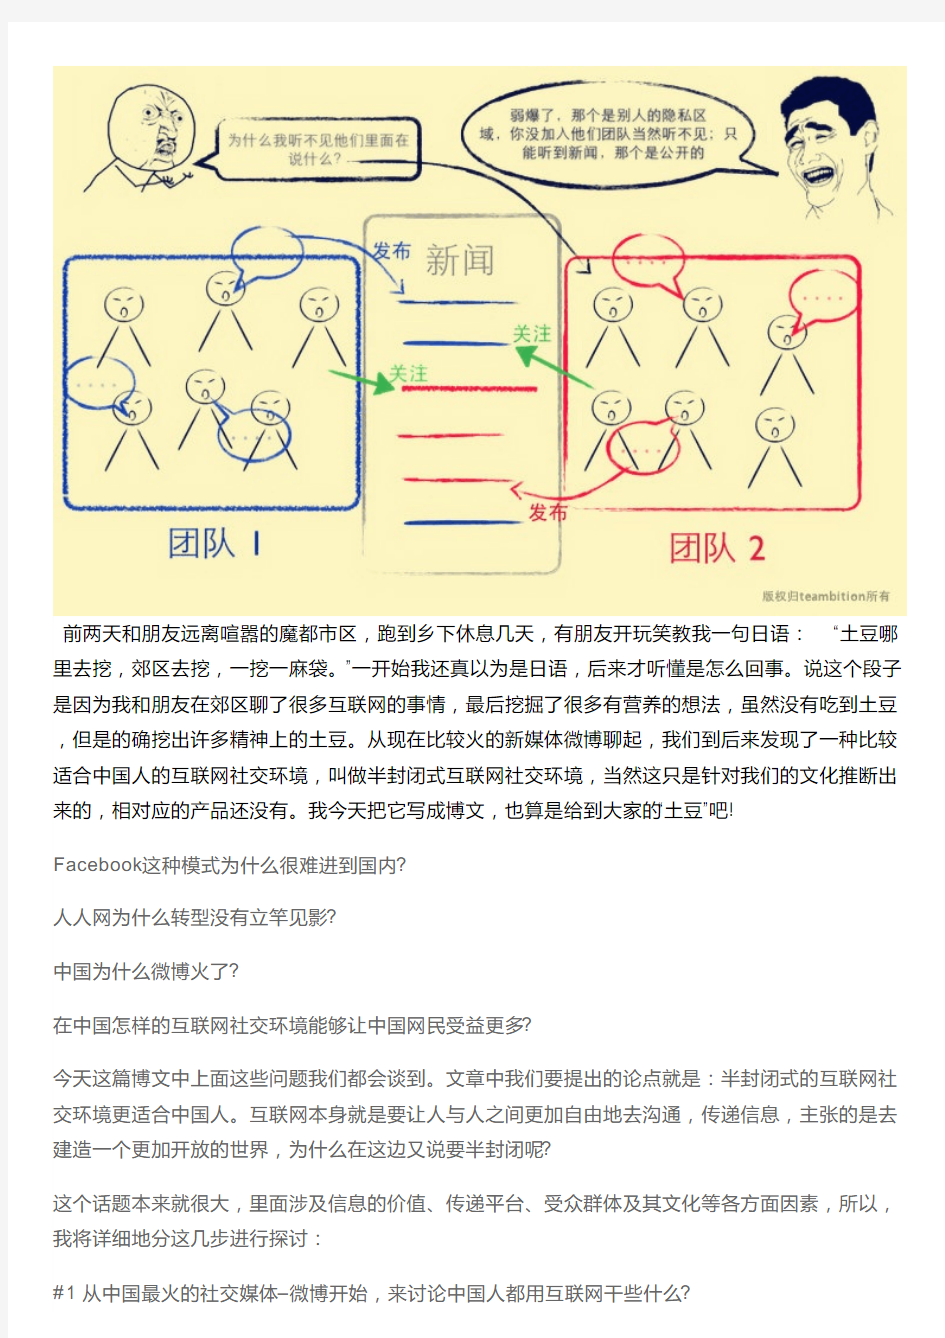 中国互联网行业环境分析